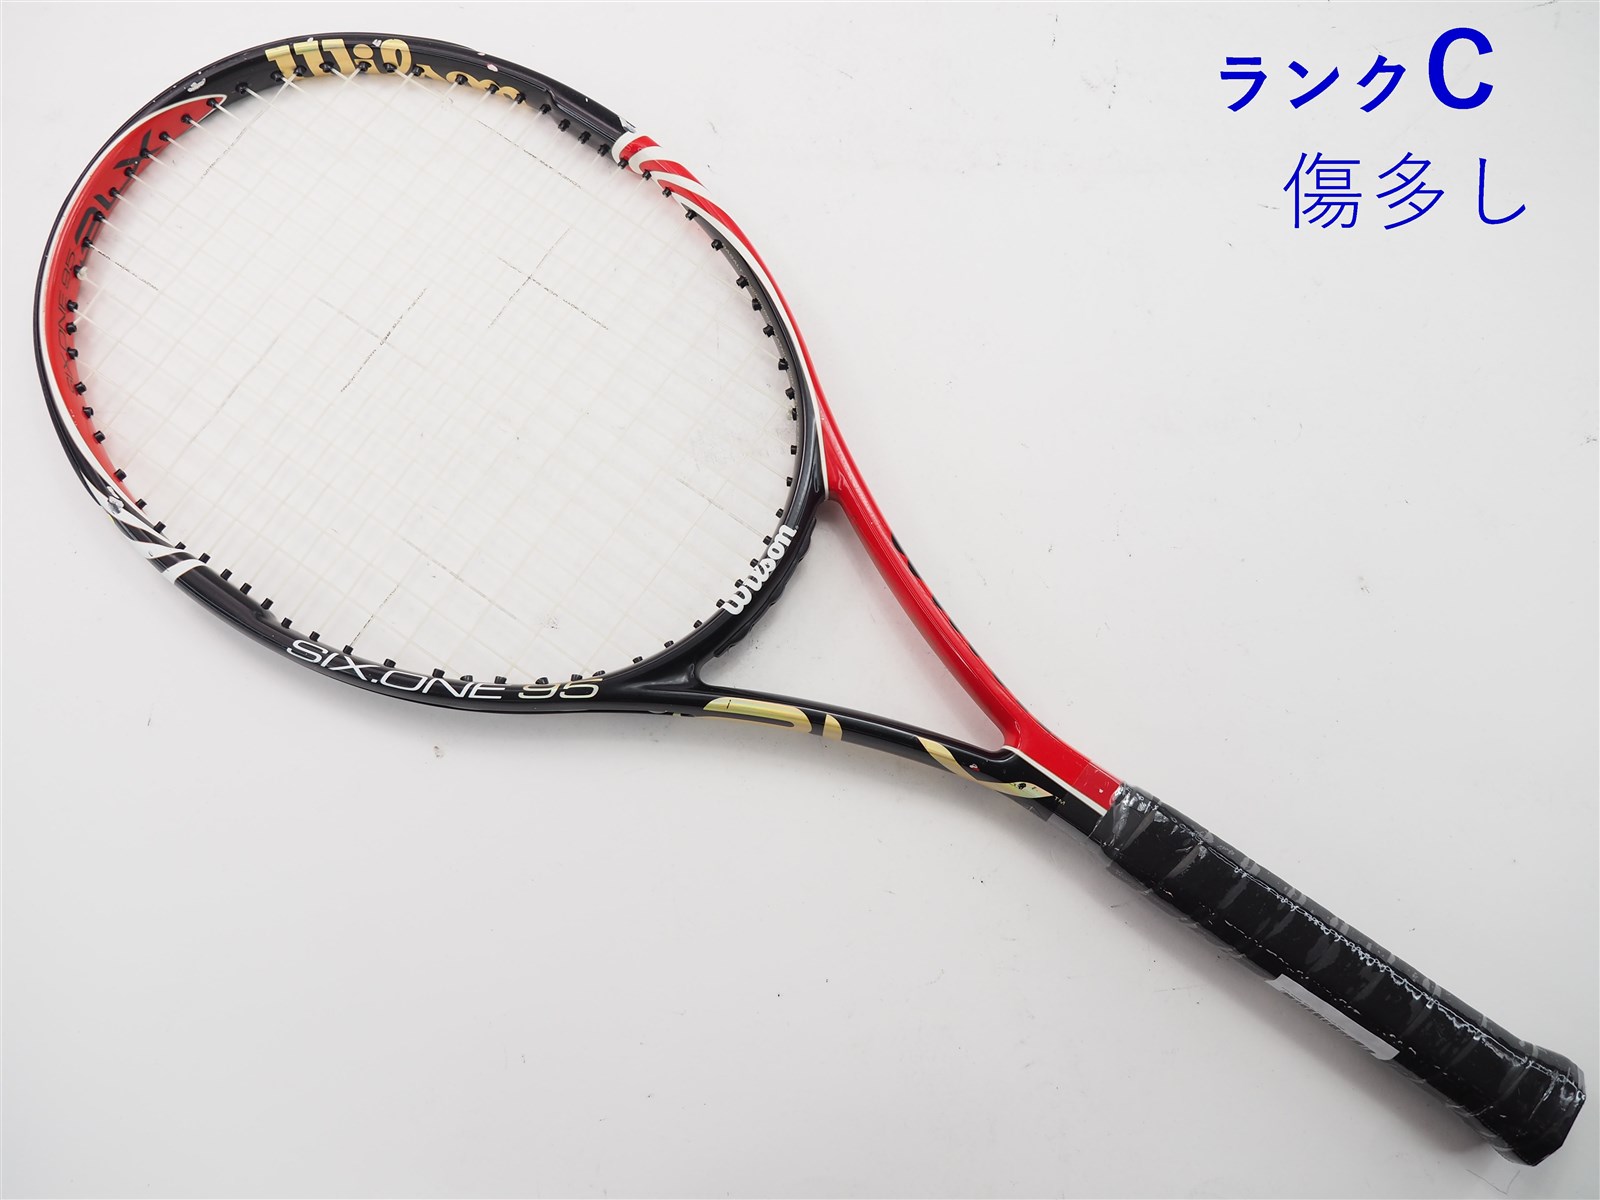 テニスラケット ウィルソン シックスワン BLX 95 JP 2010年モデル (G2